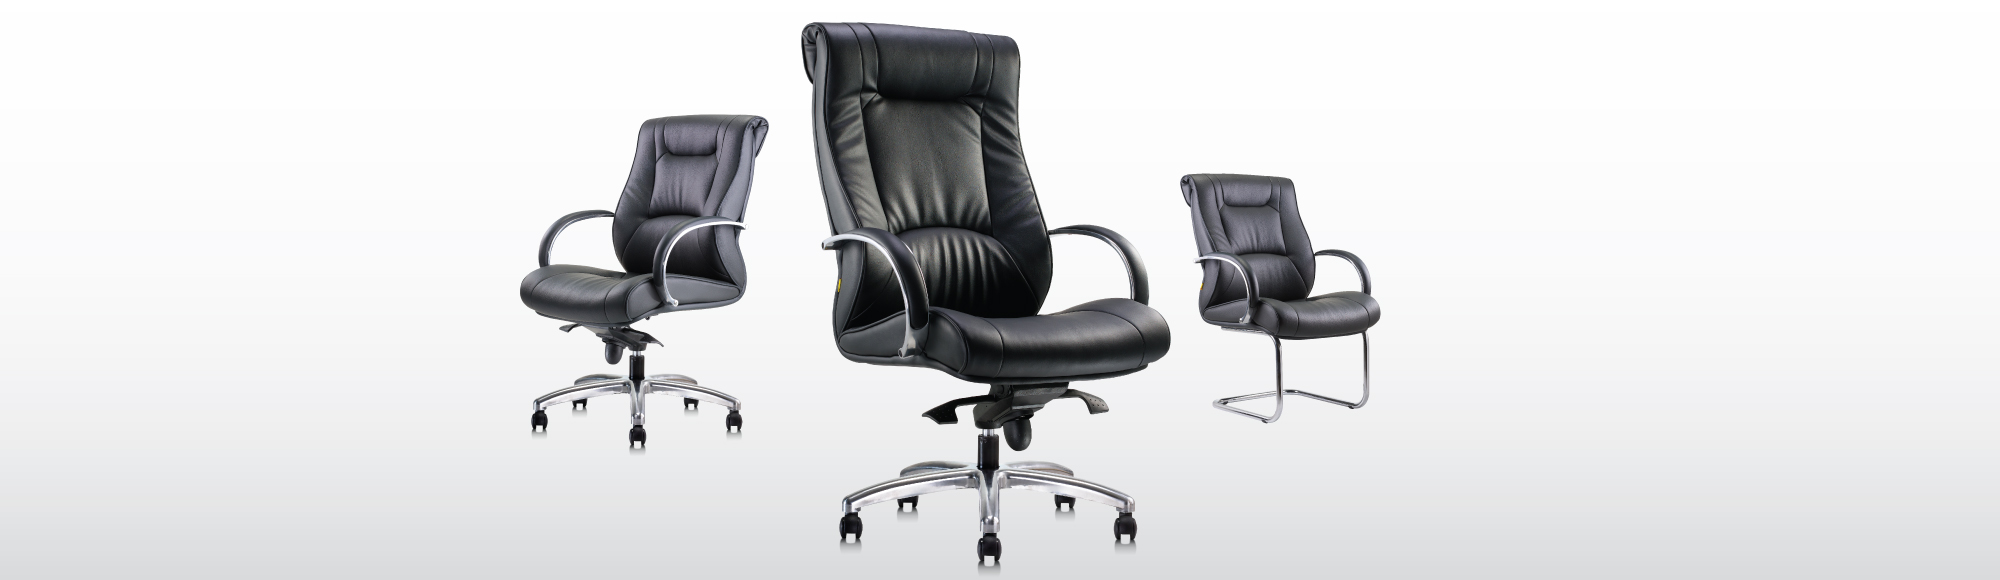 APEX Chair Boss01